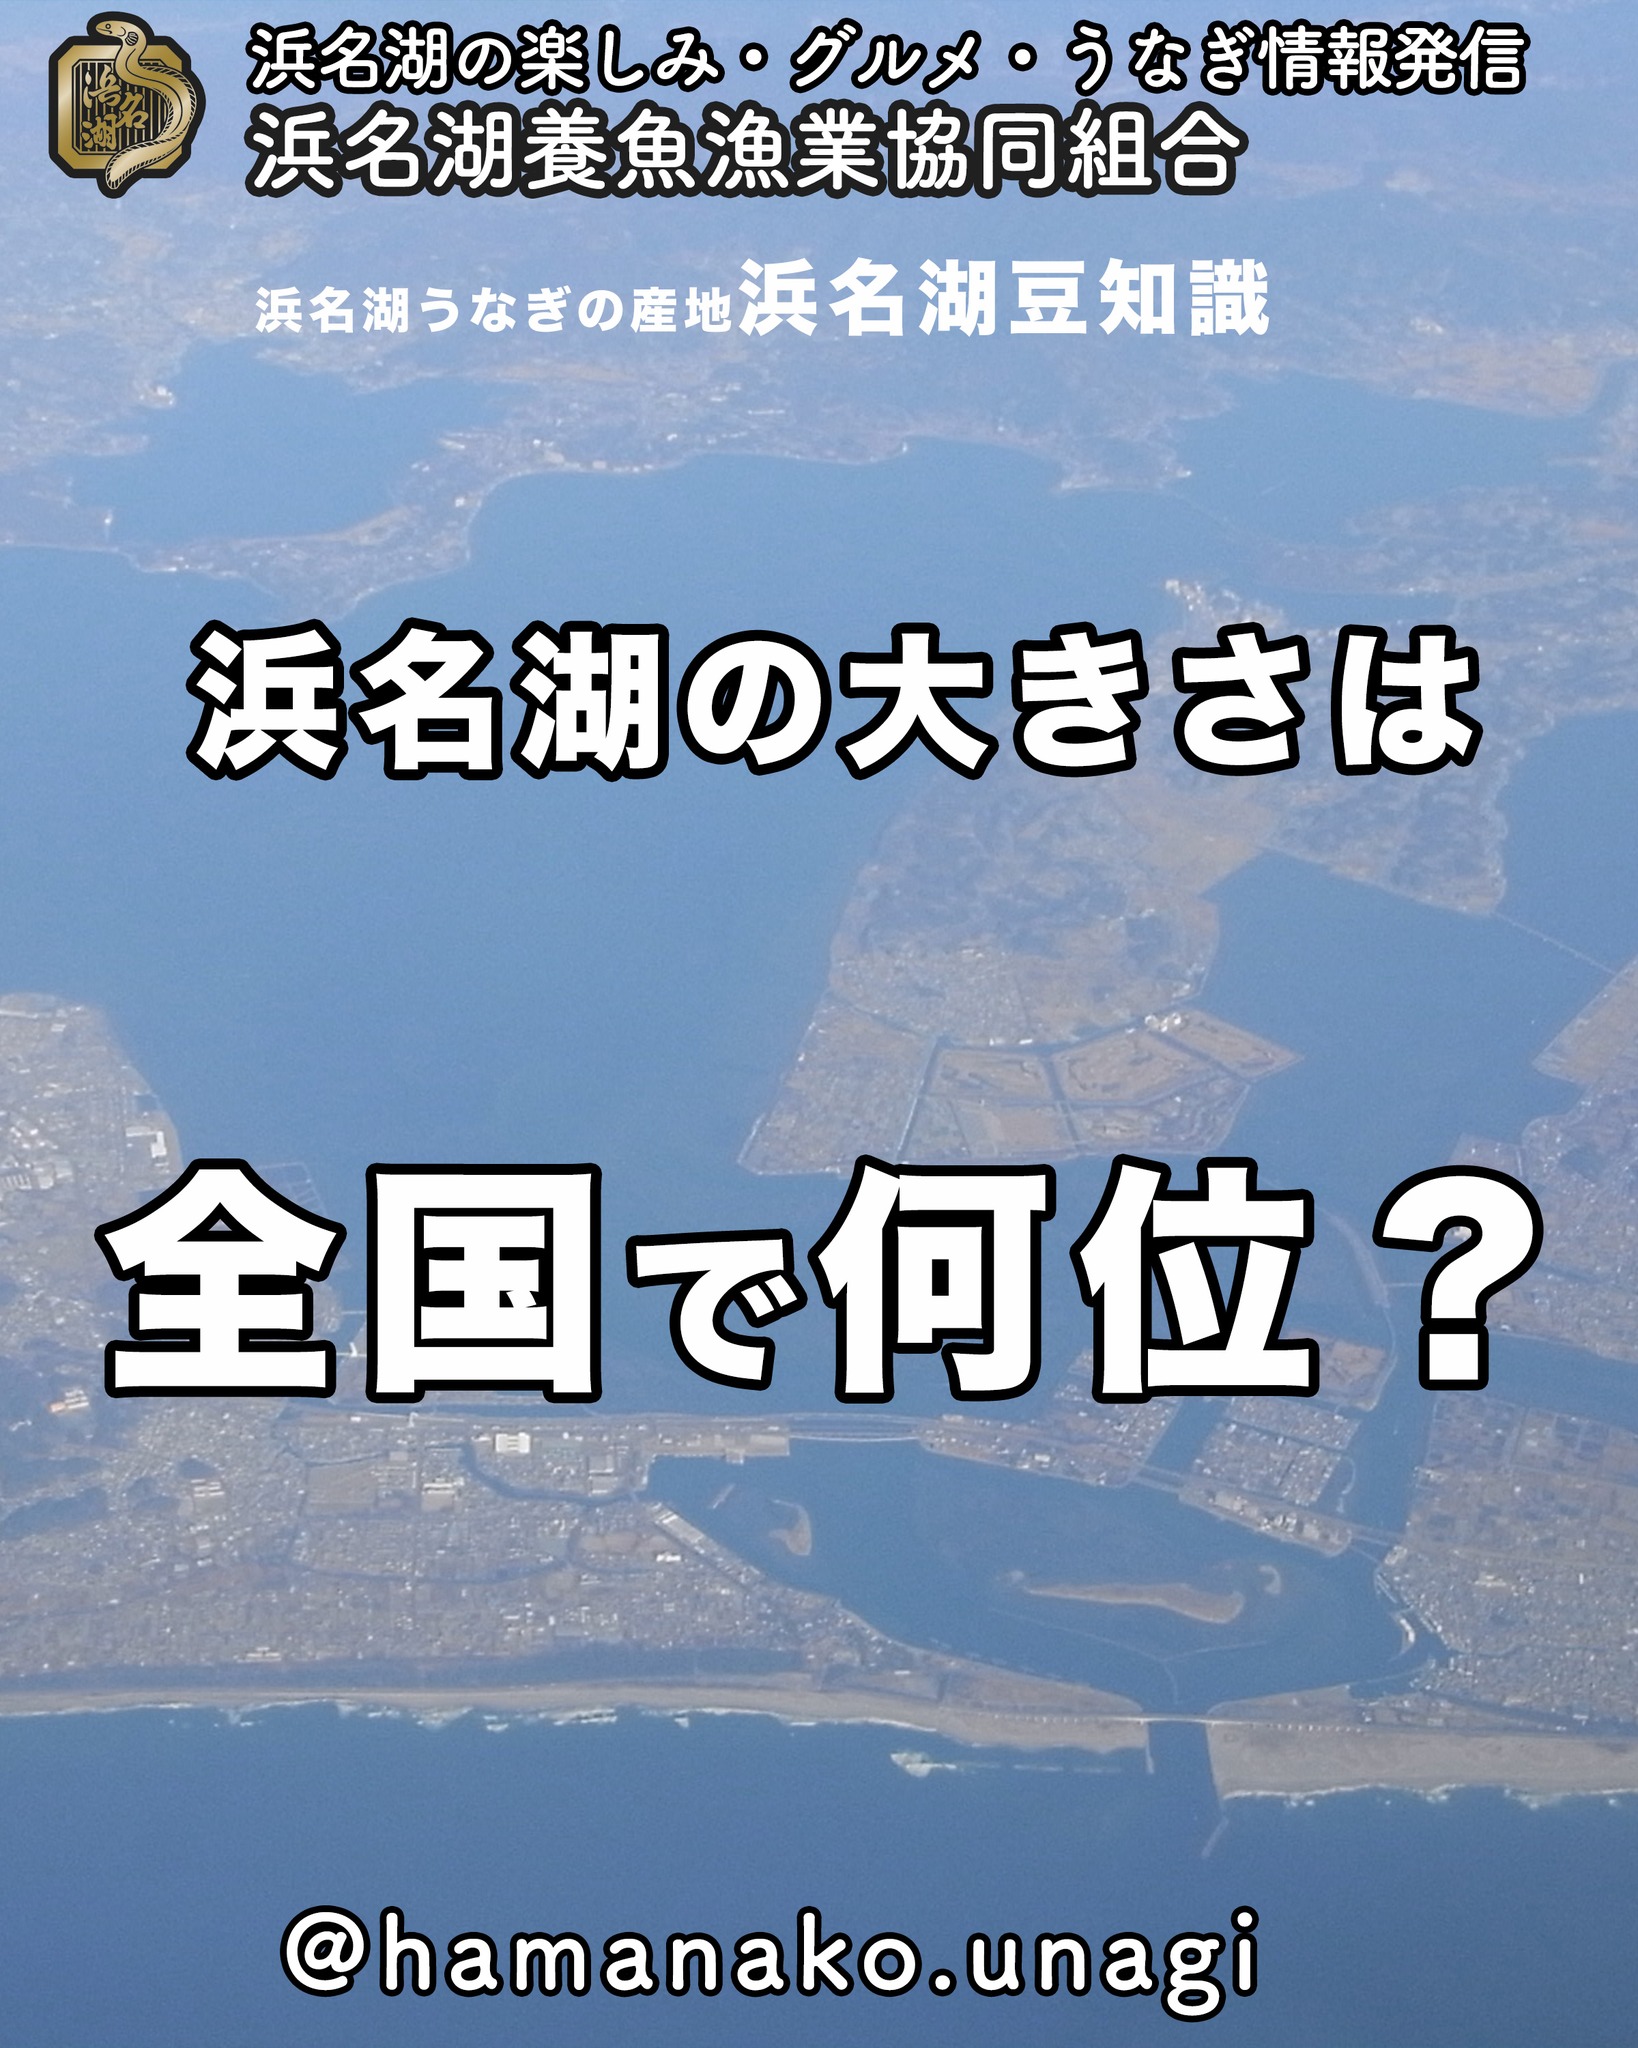 浜名湖の大きさは、
全国で何位でしょう？

静岡県の地図で見ると
そこそこ大きく見えるけど
日本地図で見ると、めっちゃちっちゃい

２枚目はみないで答えてみてね

答えはぜひ、コメントに書き込んでみてね

~~~~~~~~~~~~~~~⛩️~~~~
浜名湖を中心に、グルメ、文化
お店など浜名湖の観光情報を
みなさまにお届けしています。

参考になったら、
面白いなぁと感じたら

いいね！&フォローを
お願いいたします。

浜名湖養魚漁業組合
@hamanako.unagi

〜〜〜〜〜〜〜〜〜〜〜〜〜

#浜名湖養魚漁業組合
#浜名湖観光
#浜松観光
#浜名湖豆知識
#浜名湖の歴史